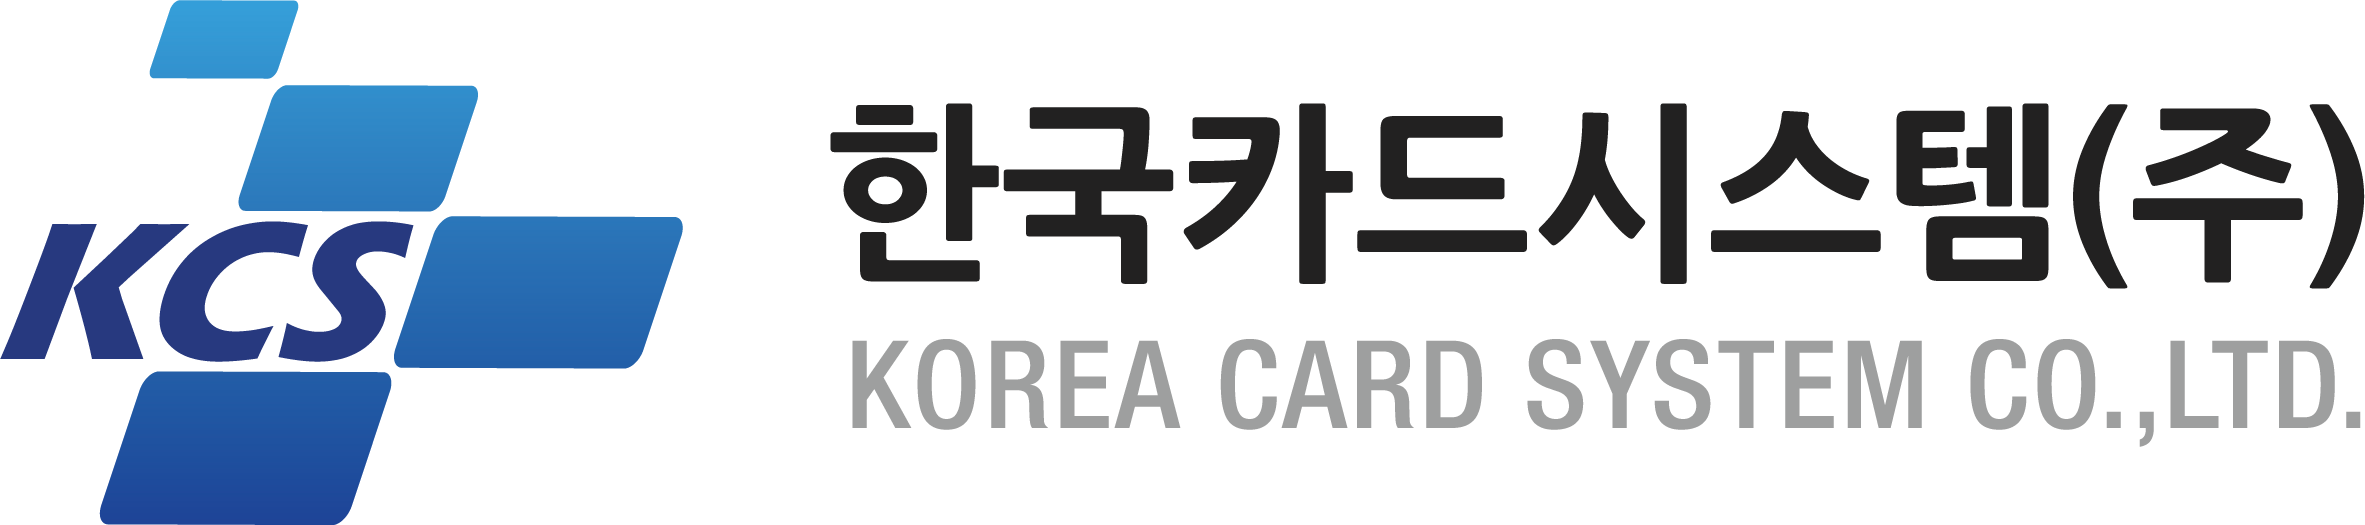 한국카드시스템(주)의 기업로고